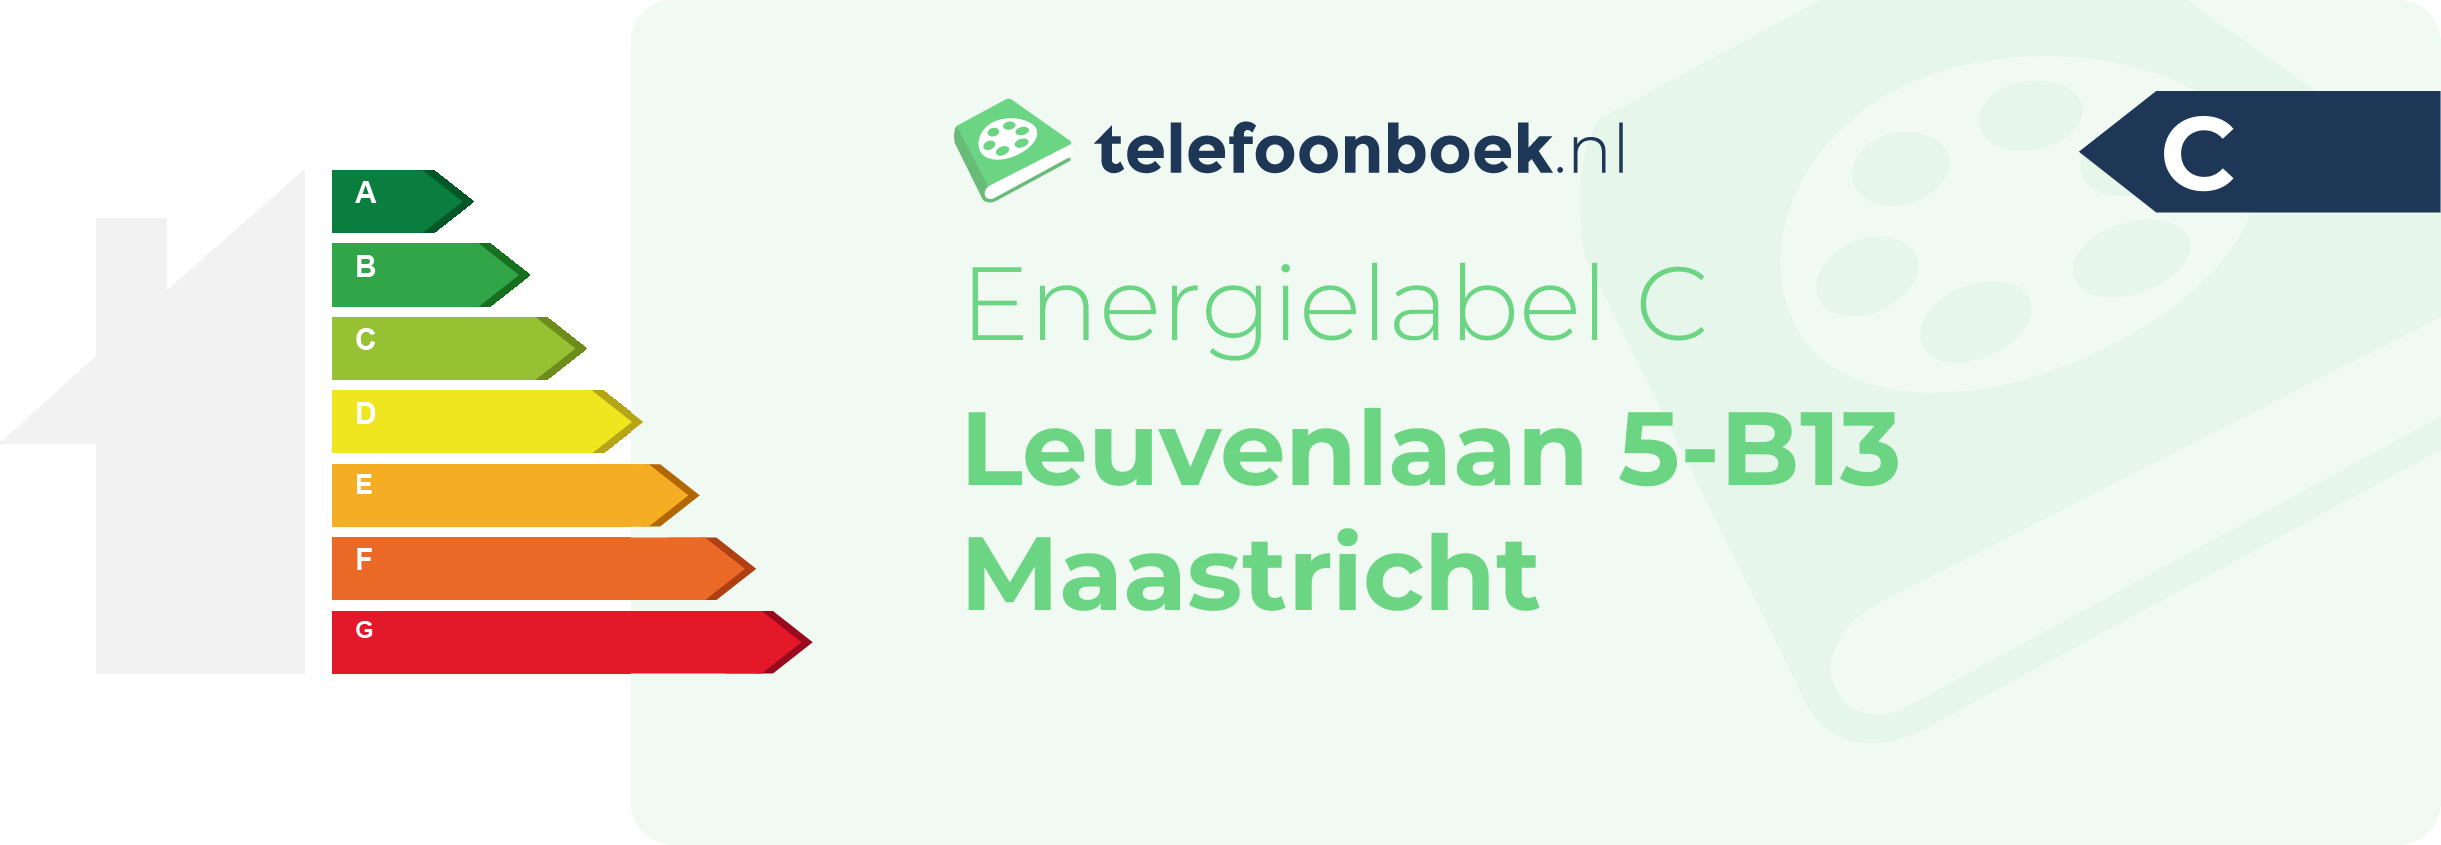 Energielabel Leuvenlaan 5-B13 Maastricht